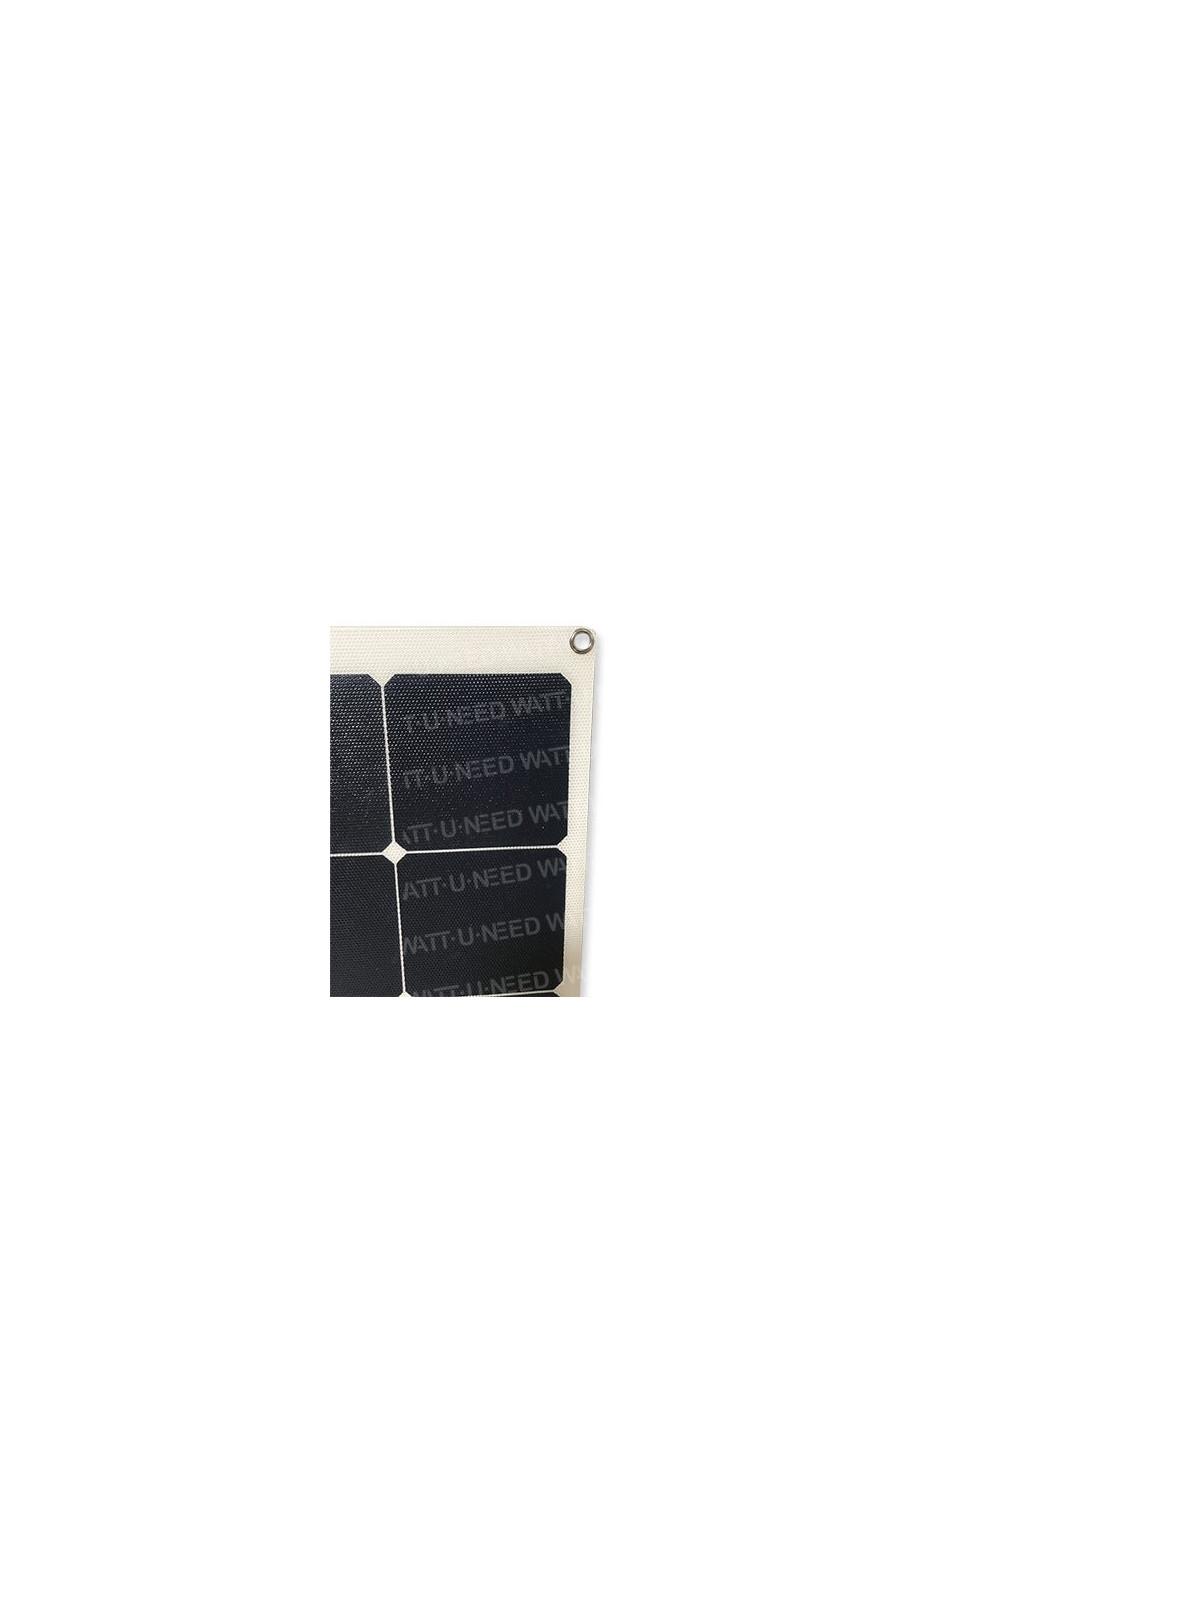 MX FLEX Solarpanel 140 Wp